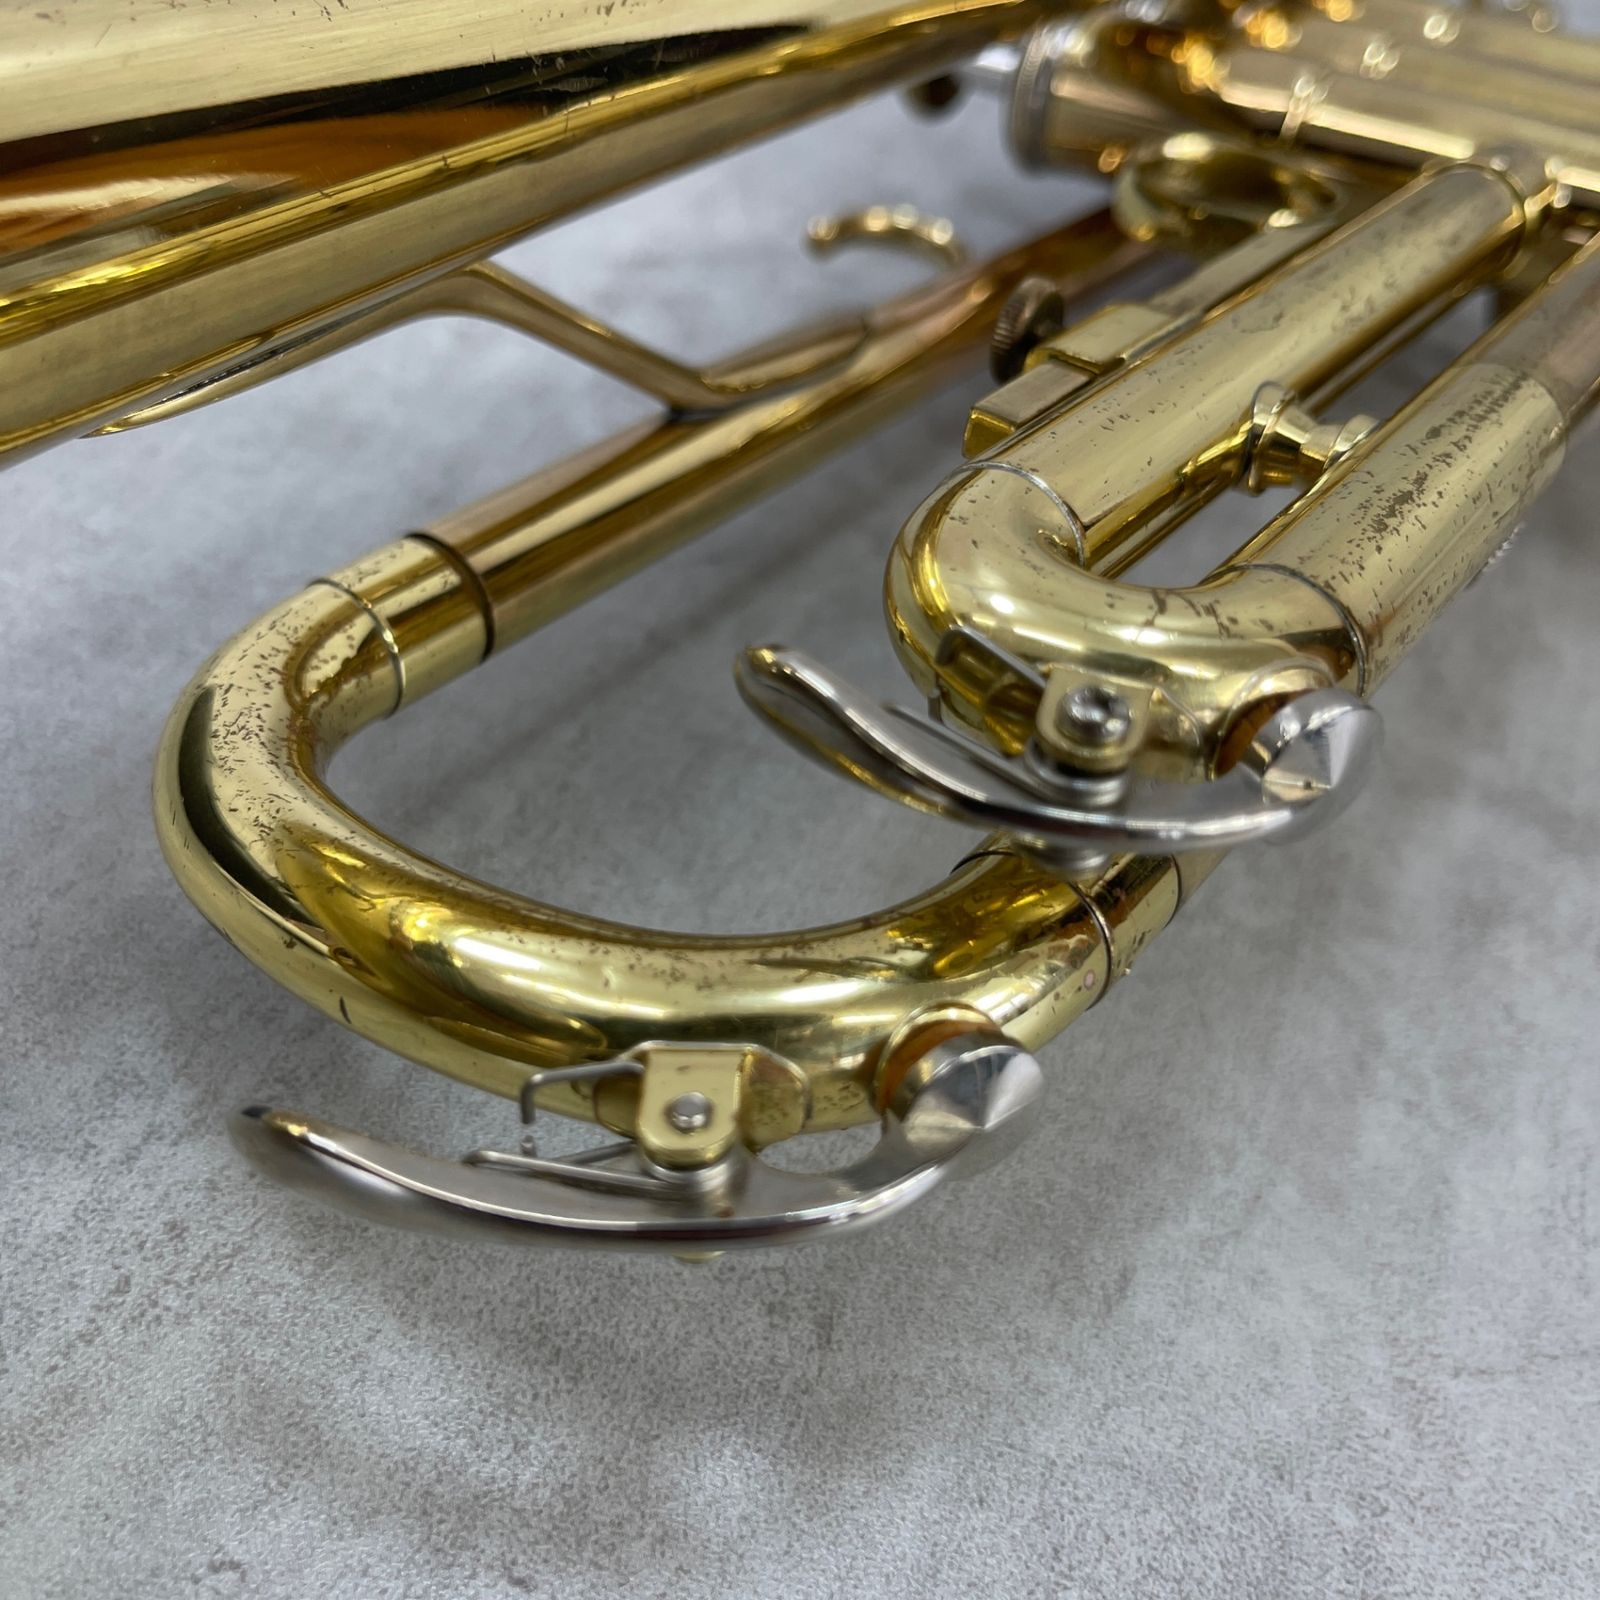 YAMAHA ヤマハ トランペット trumpet 管楽器 YTR-235 ゴールドラッカー ハードケース スチューデントモデル 学生 初心者おすすめ  - メルカリ